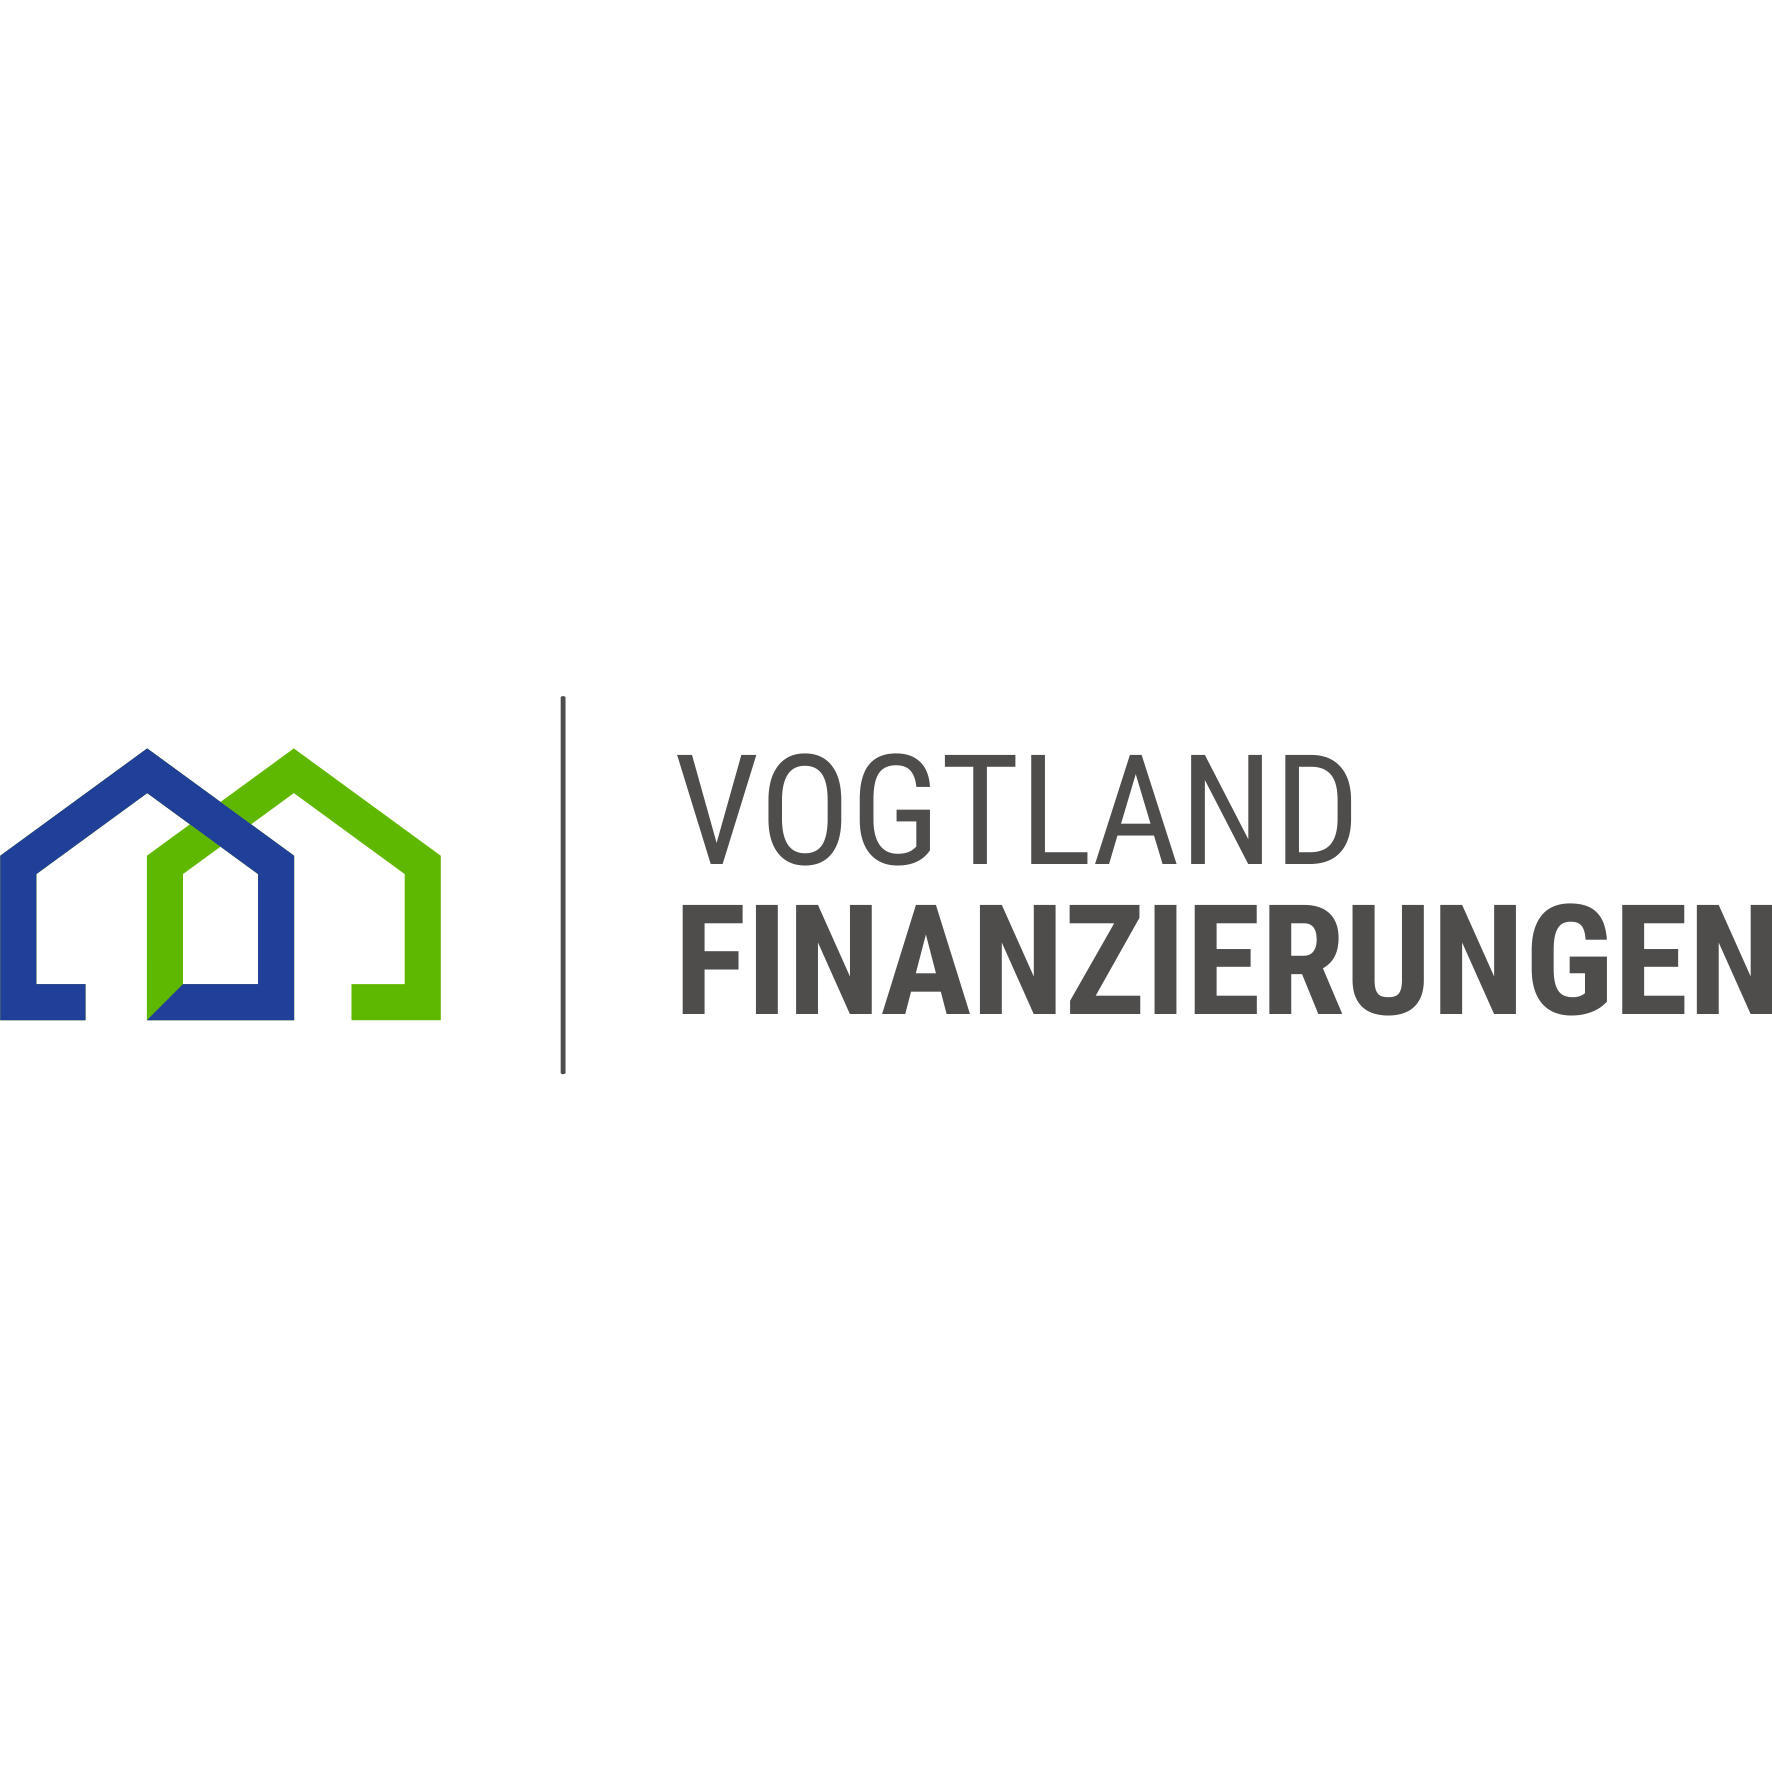 Vogtland Finanzierungen in Greiz - Logo